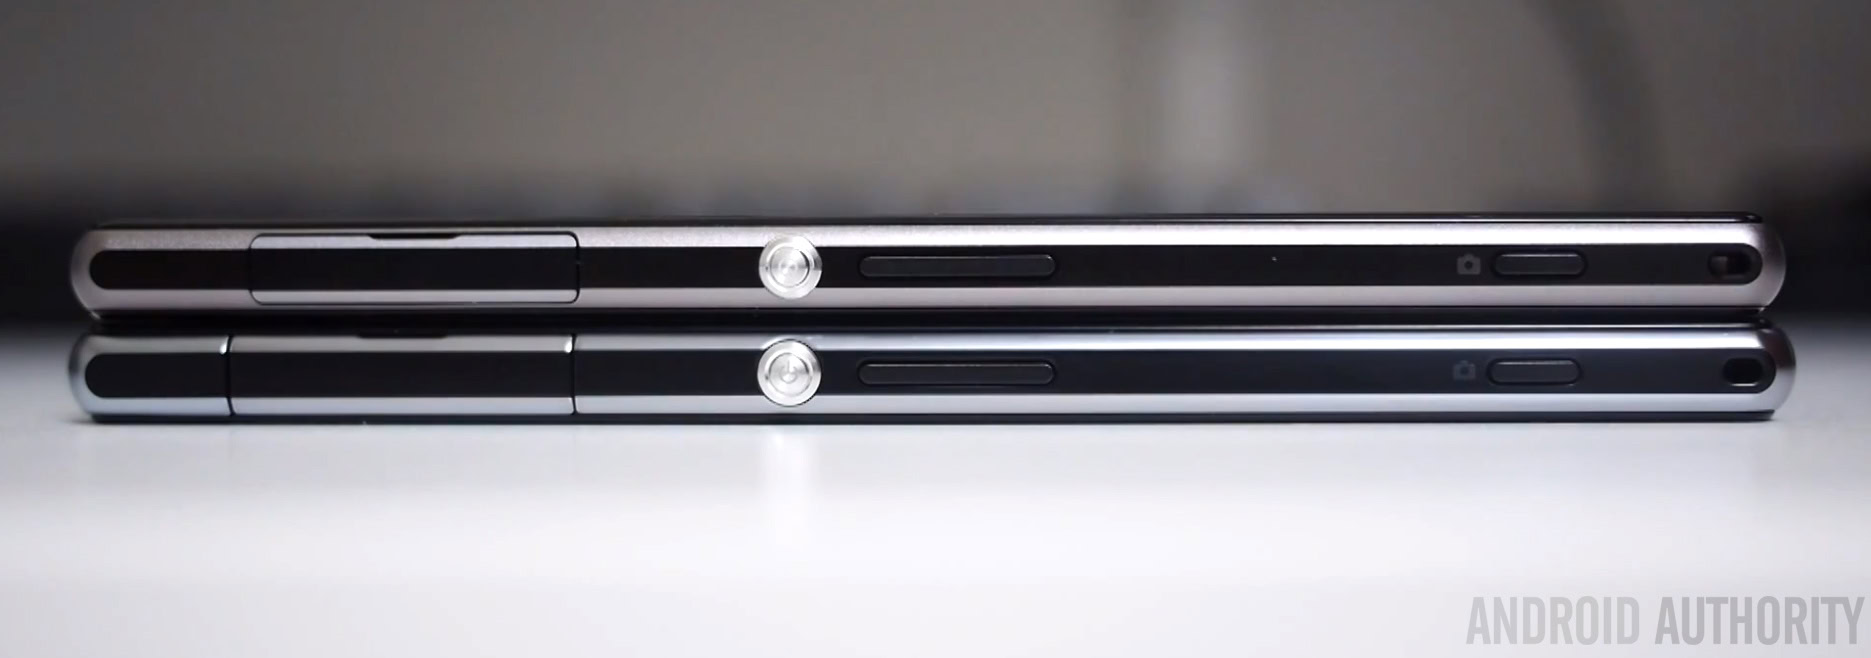 Sony Xperia Z1 vs Sony Xperia Z1s